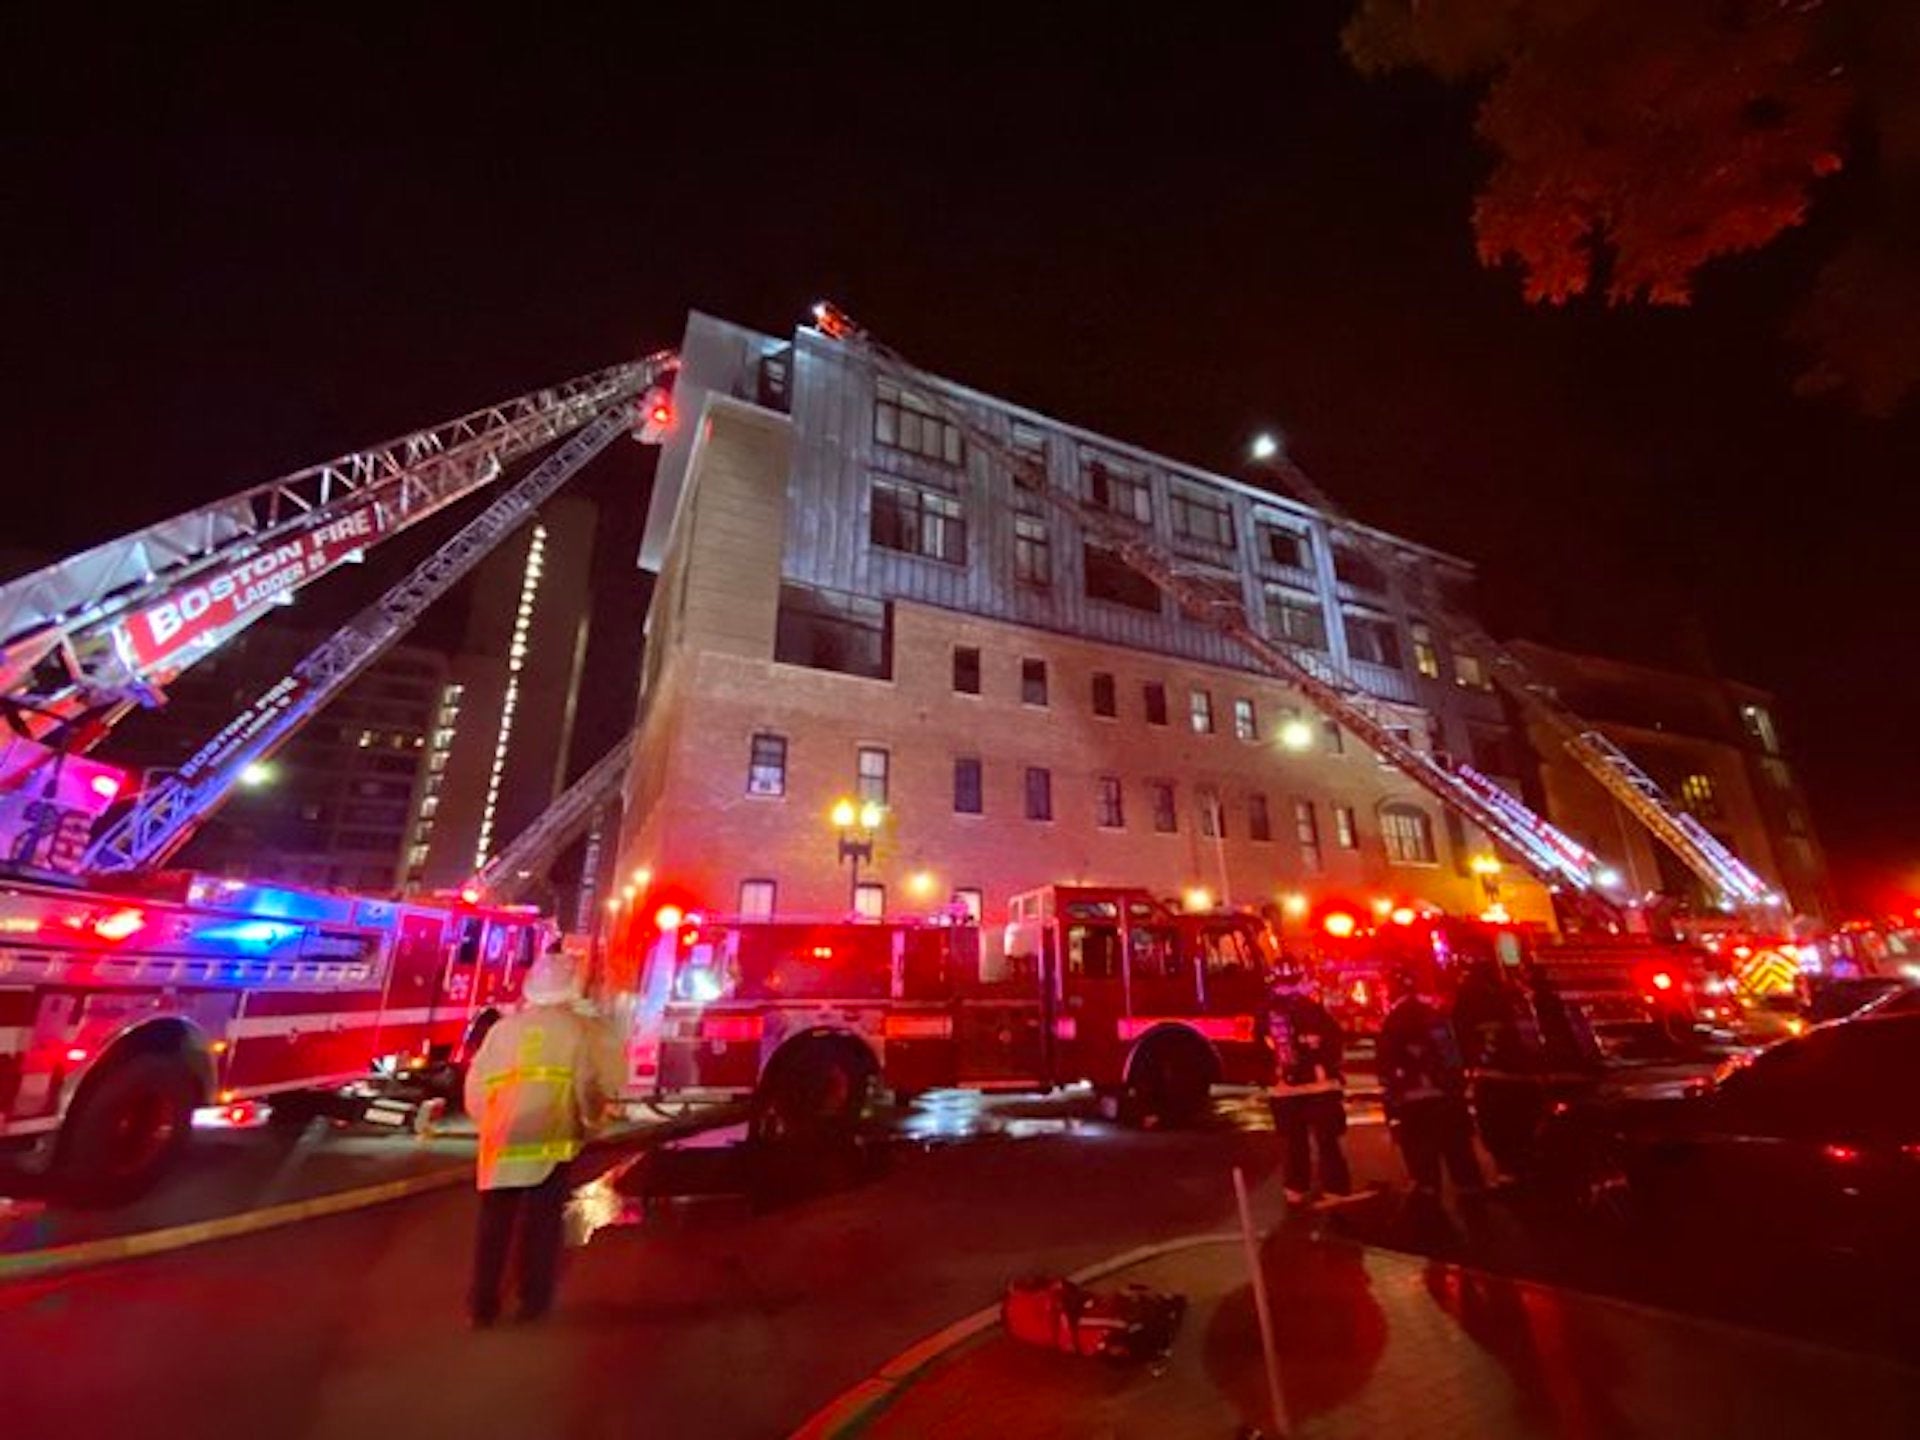 Boston Firefighters Take Down Jersey Street Fire In Intense Heat